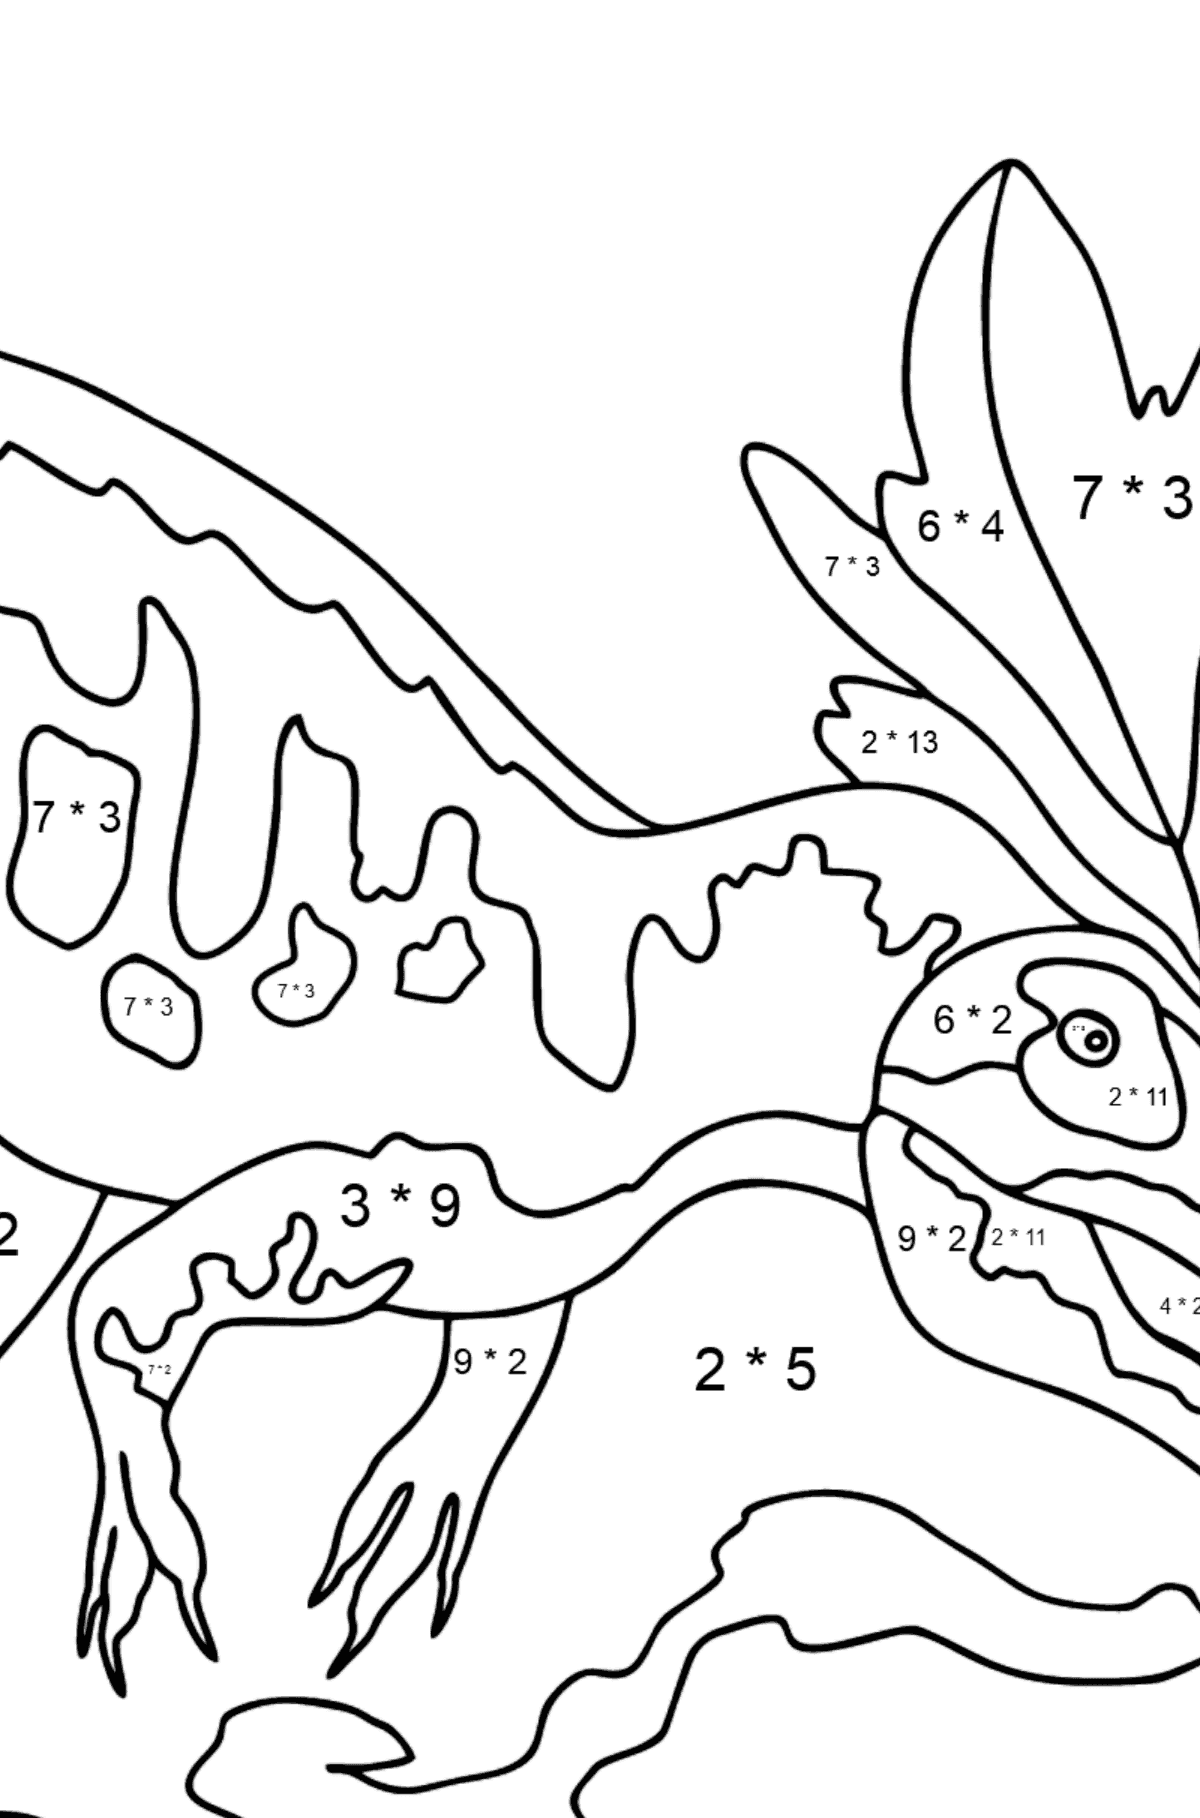 Dibujo para colorear de alosaurio (difícil) - Colorear con Matemáticas - Multiplicaciones para Niños